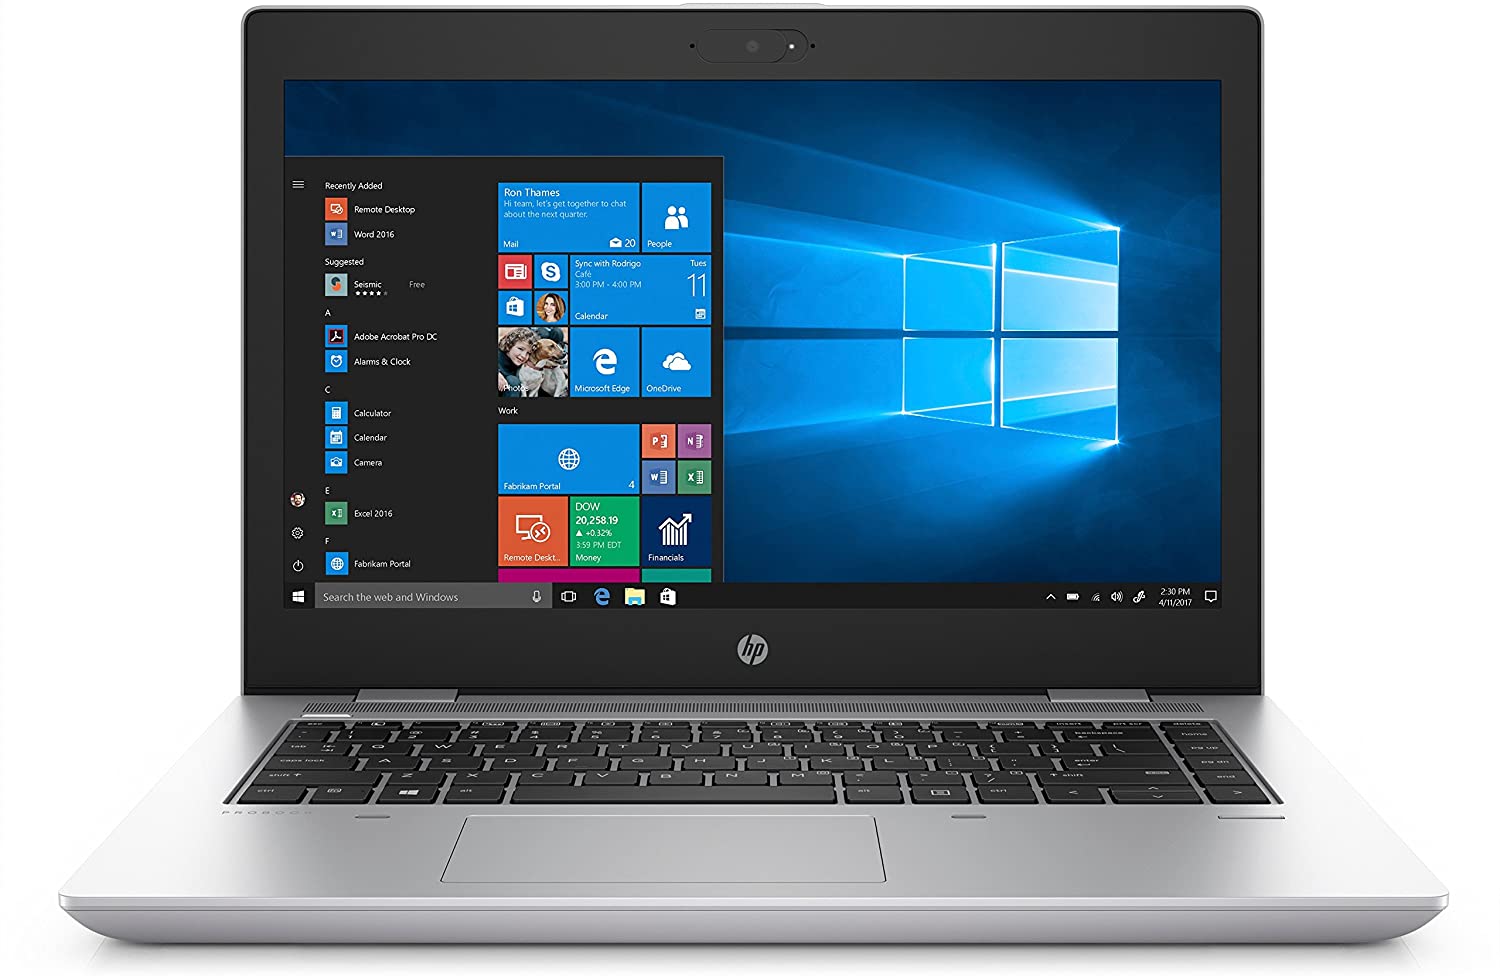 HP ProBook 640 G4 Notebook, Intel Core-i5 8350U, 16Gb DDR4 Ram, 128Gb SSD, Windows 10 Pro